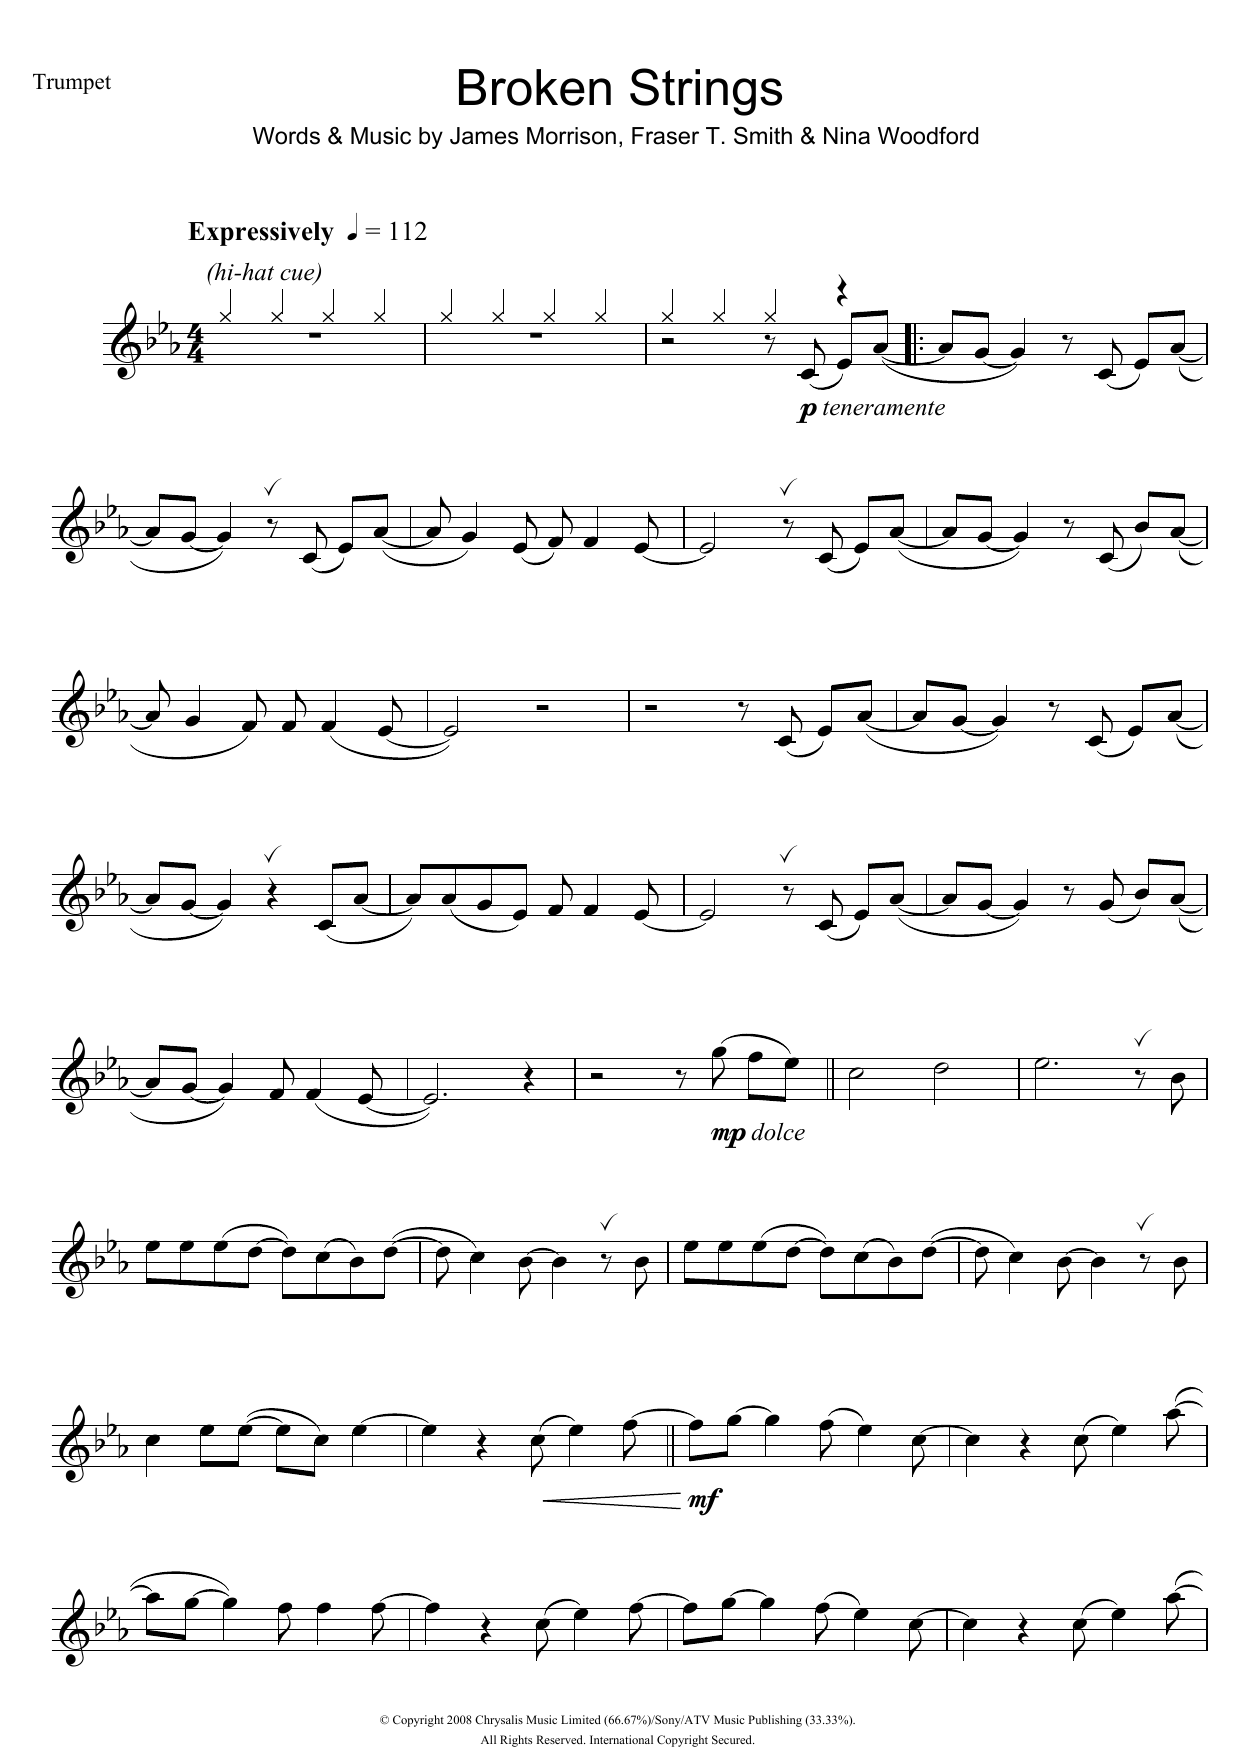 James Morrison Broken Strings Sheet Music Notes & Chords for Flute - Download or Print PDF